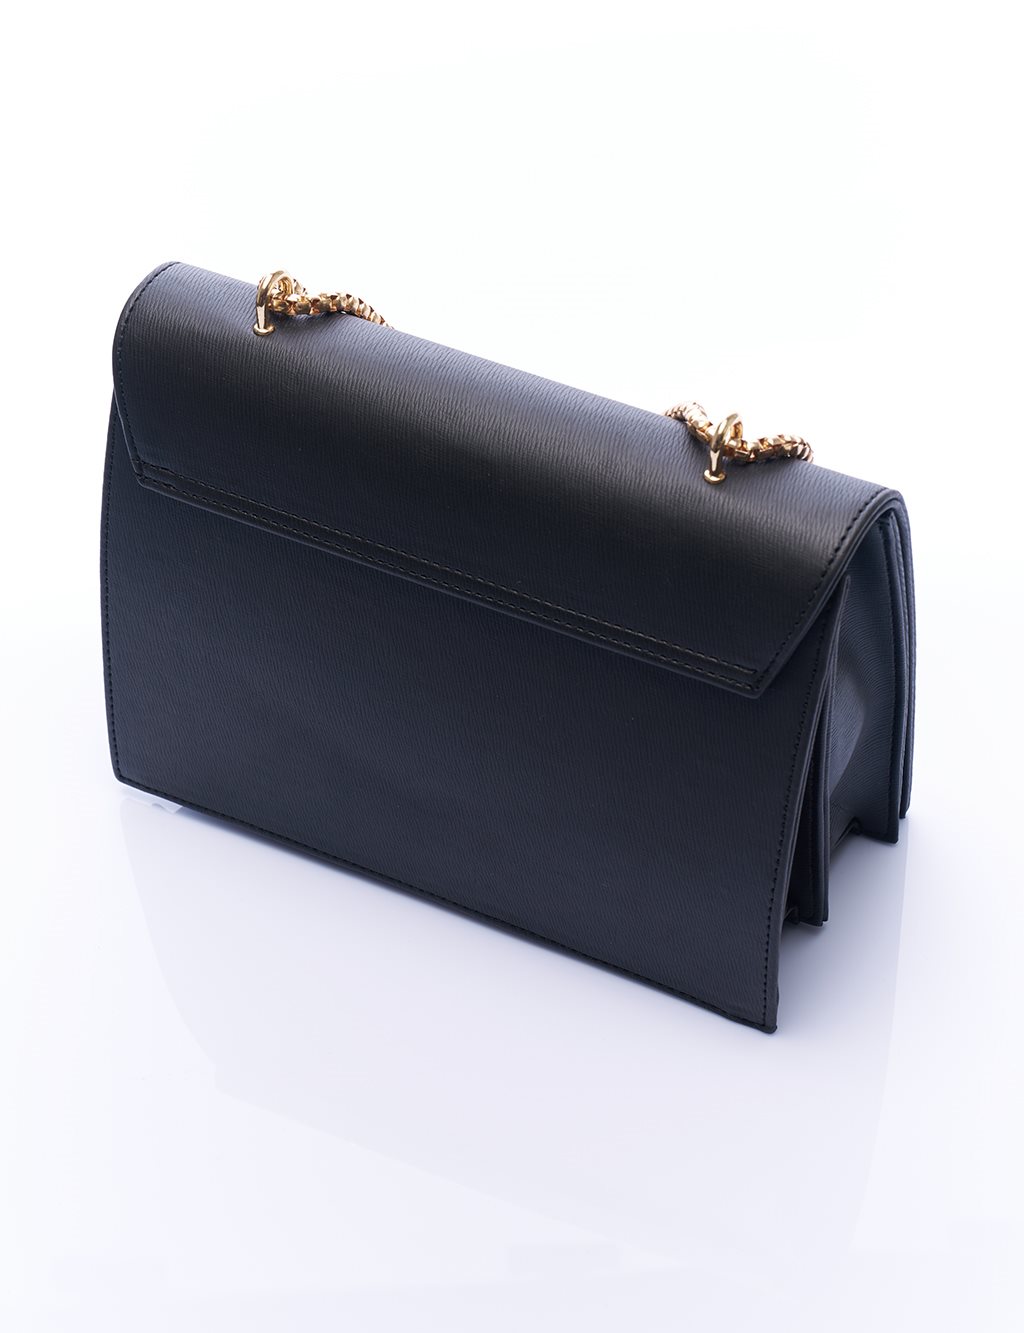 Designer Cover Chain Bag Black